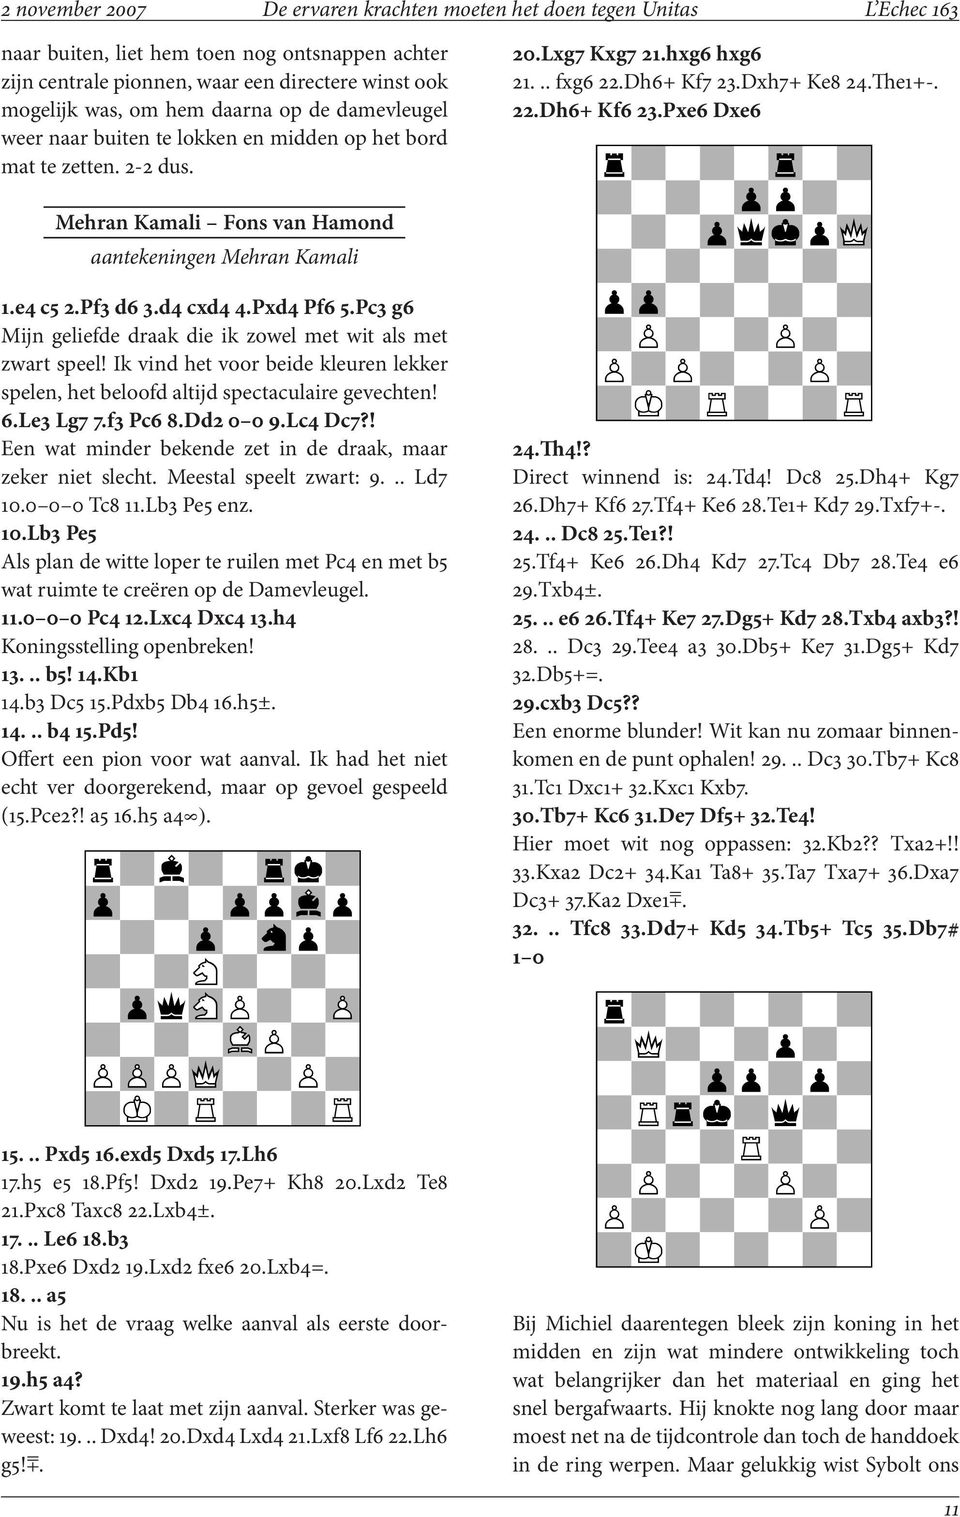 Pxe6 Dxe6 Mehran Kamali Fons van Hamond aantekeningen Mehran Kamali 1.e4 c5 2.Pf3 d6 3.d4 cxd4 4.Pxd4 Pf6 5.Pc3 g6 Mijn geliefde draak die ik zowel met wit als met zwart speel!